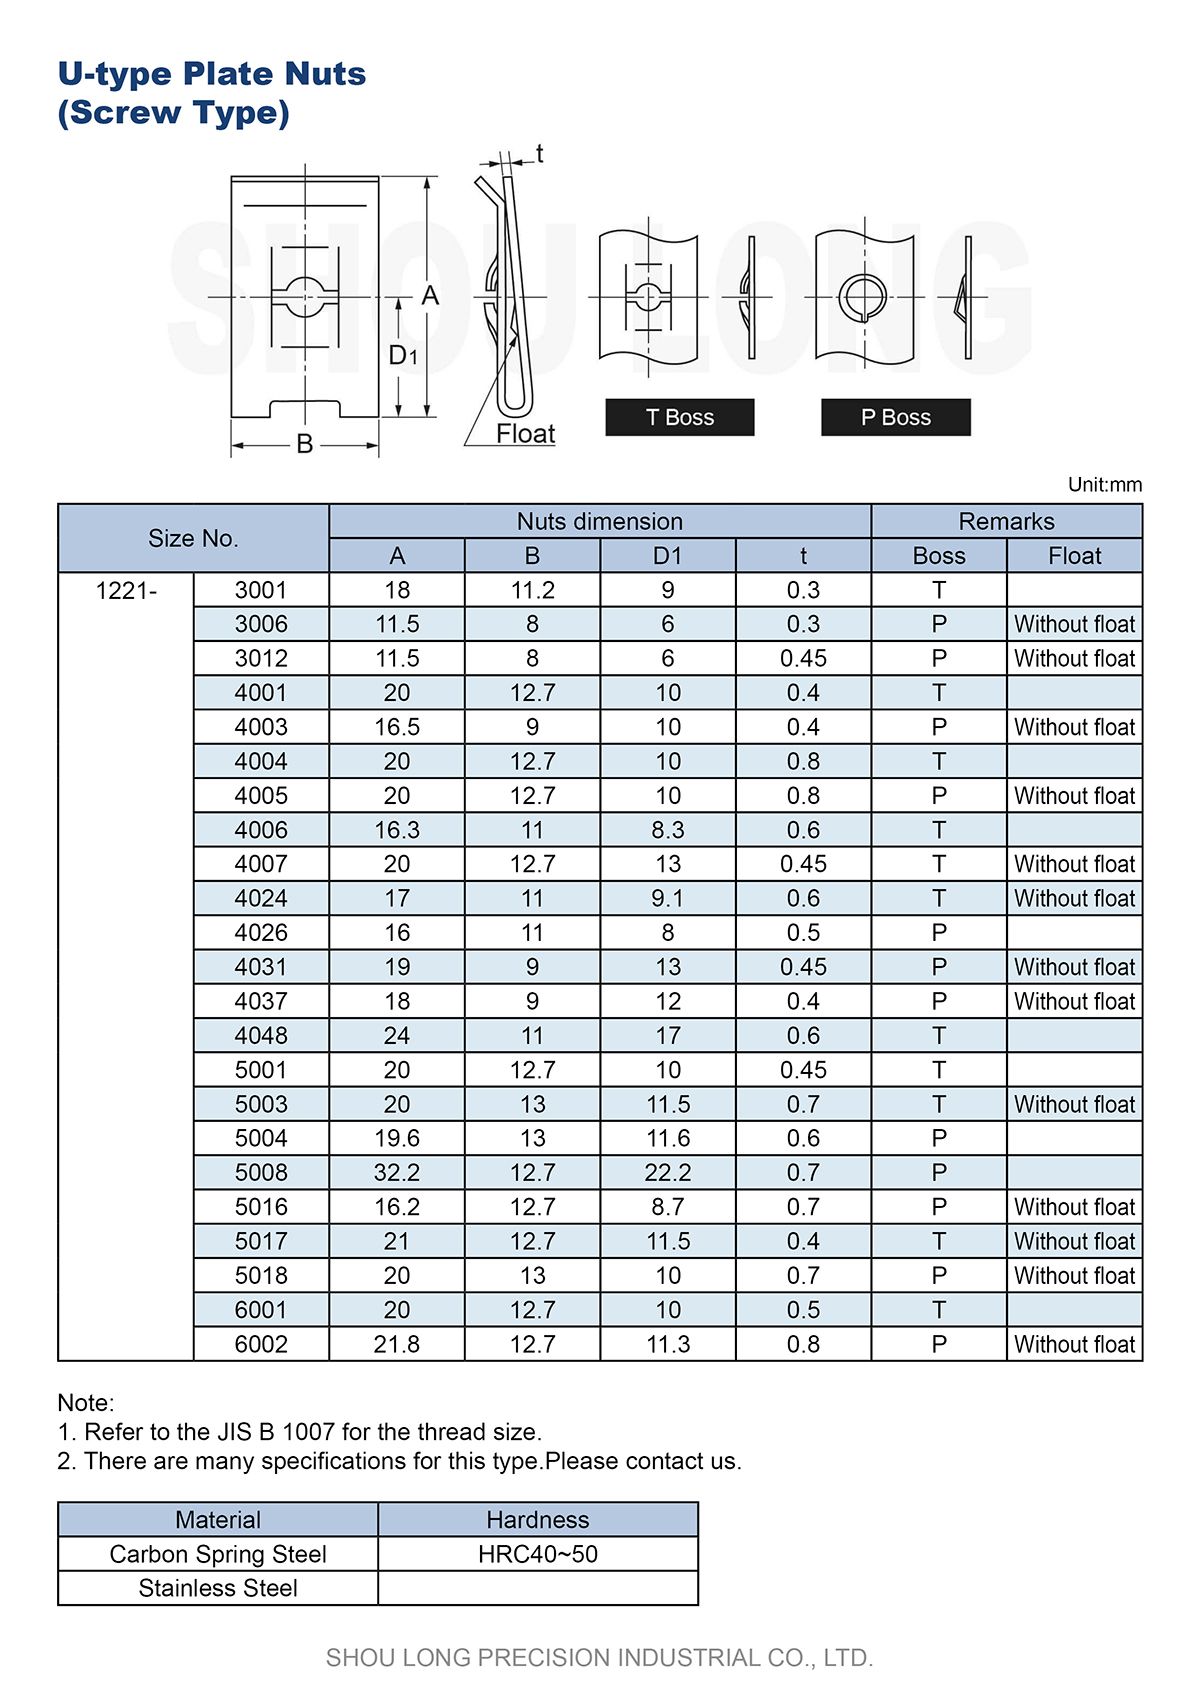 مواصفات صواميل الصفائح النوع U للمقاسات القياسية اليابانية JIS -1